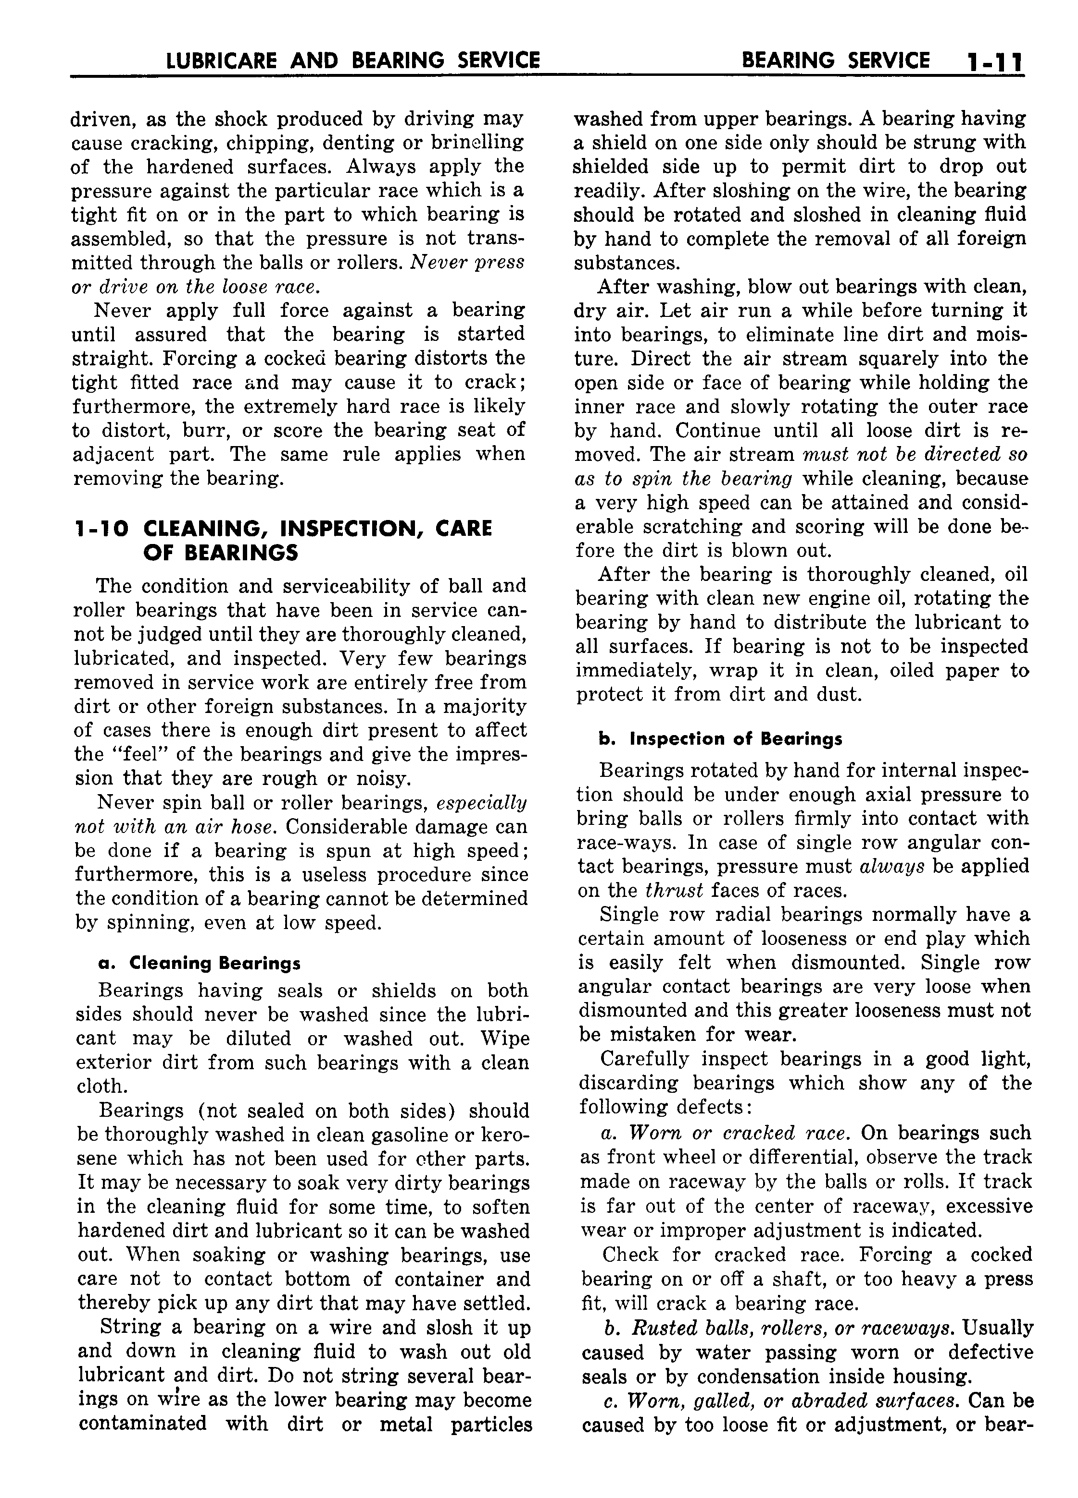 n_02 1957 Buick Shop Manual - Lubricare-011-011.jpg